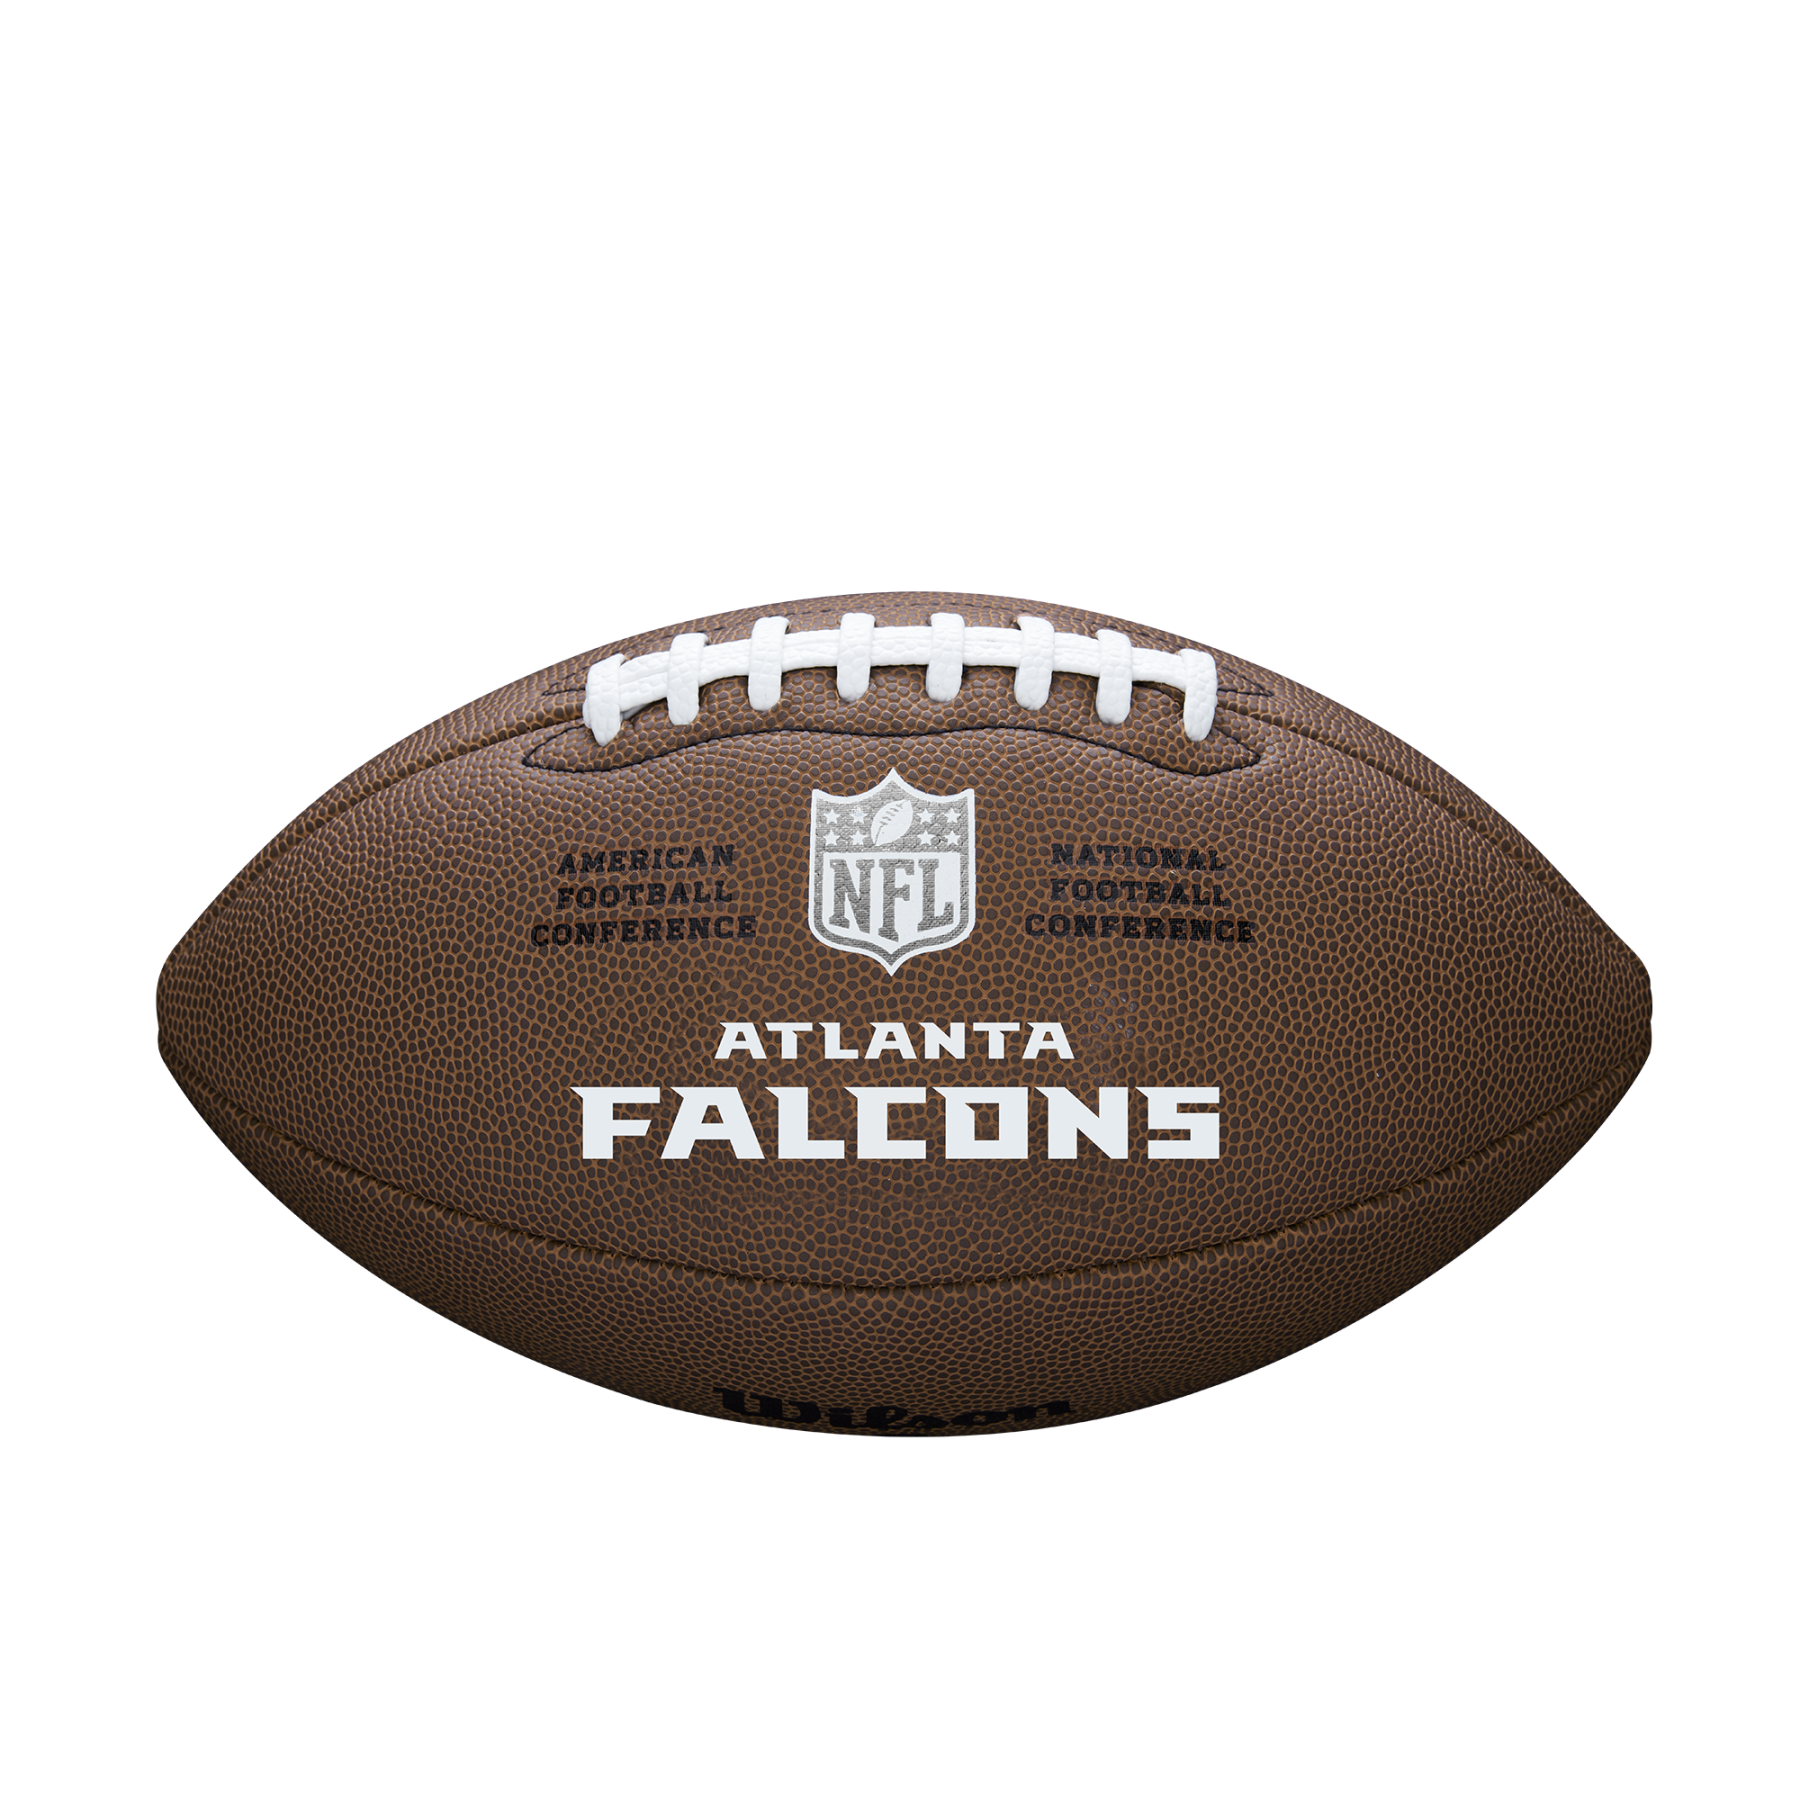 Ballon Wilson Falcons NFL Licensed